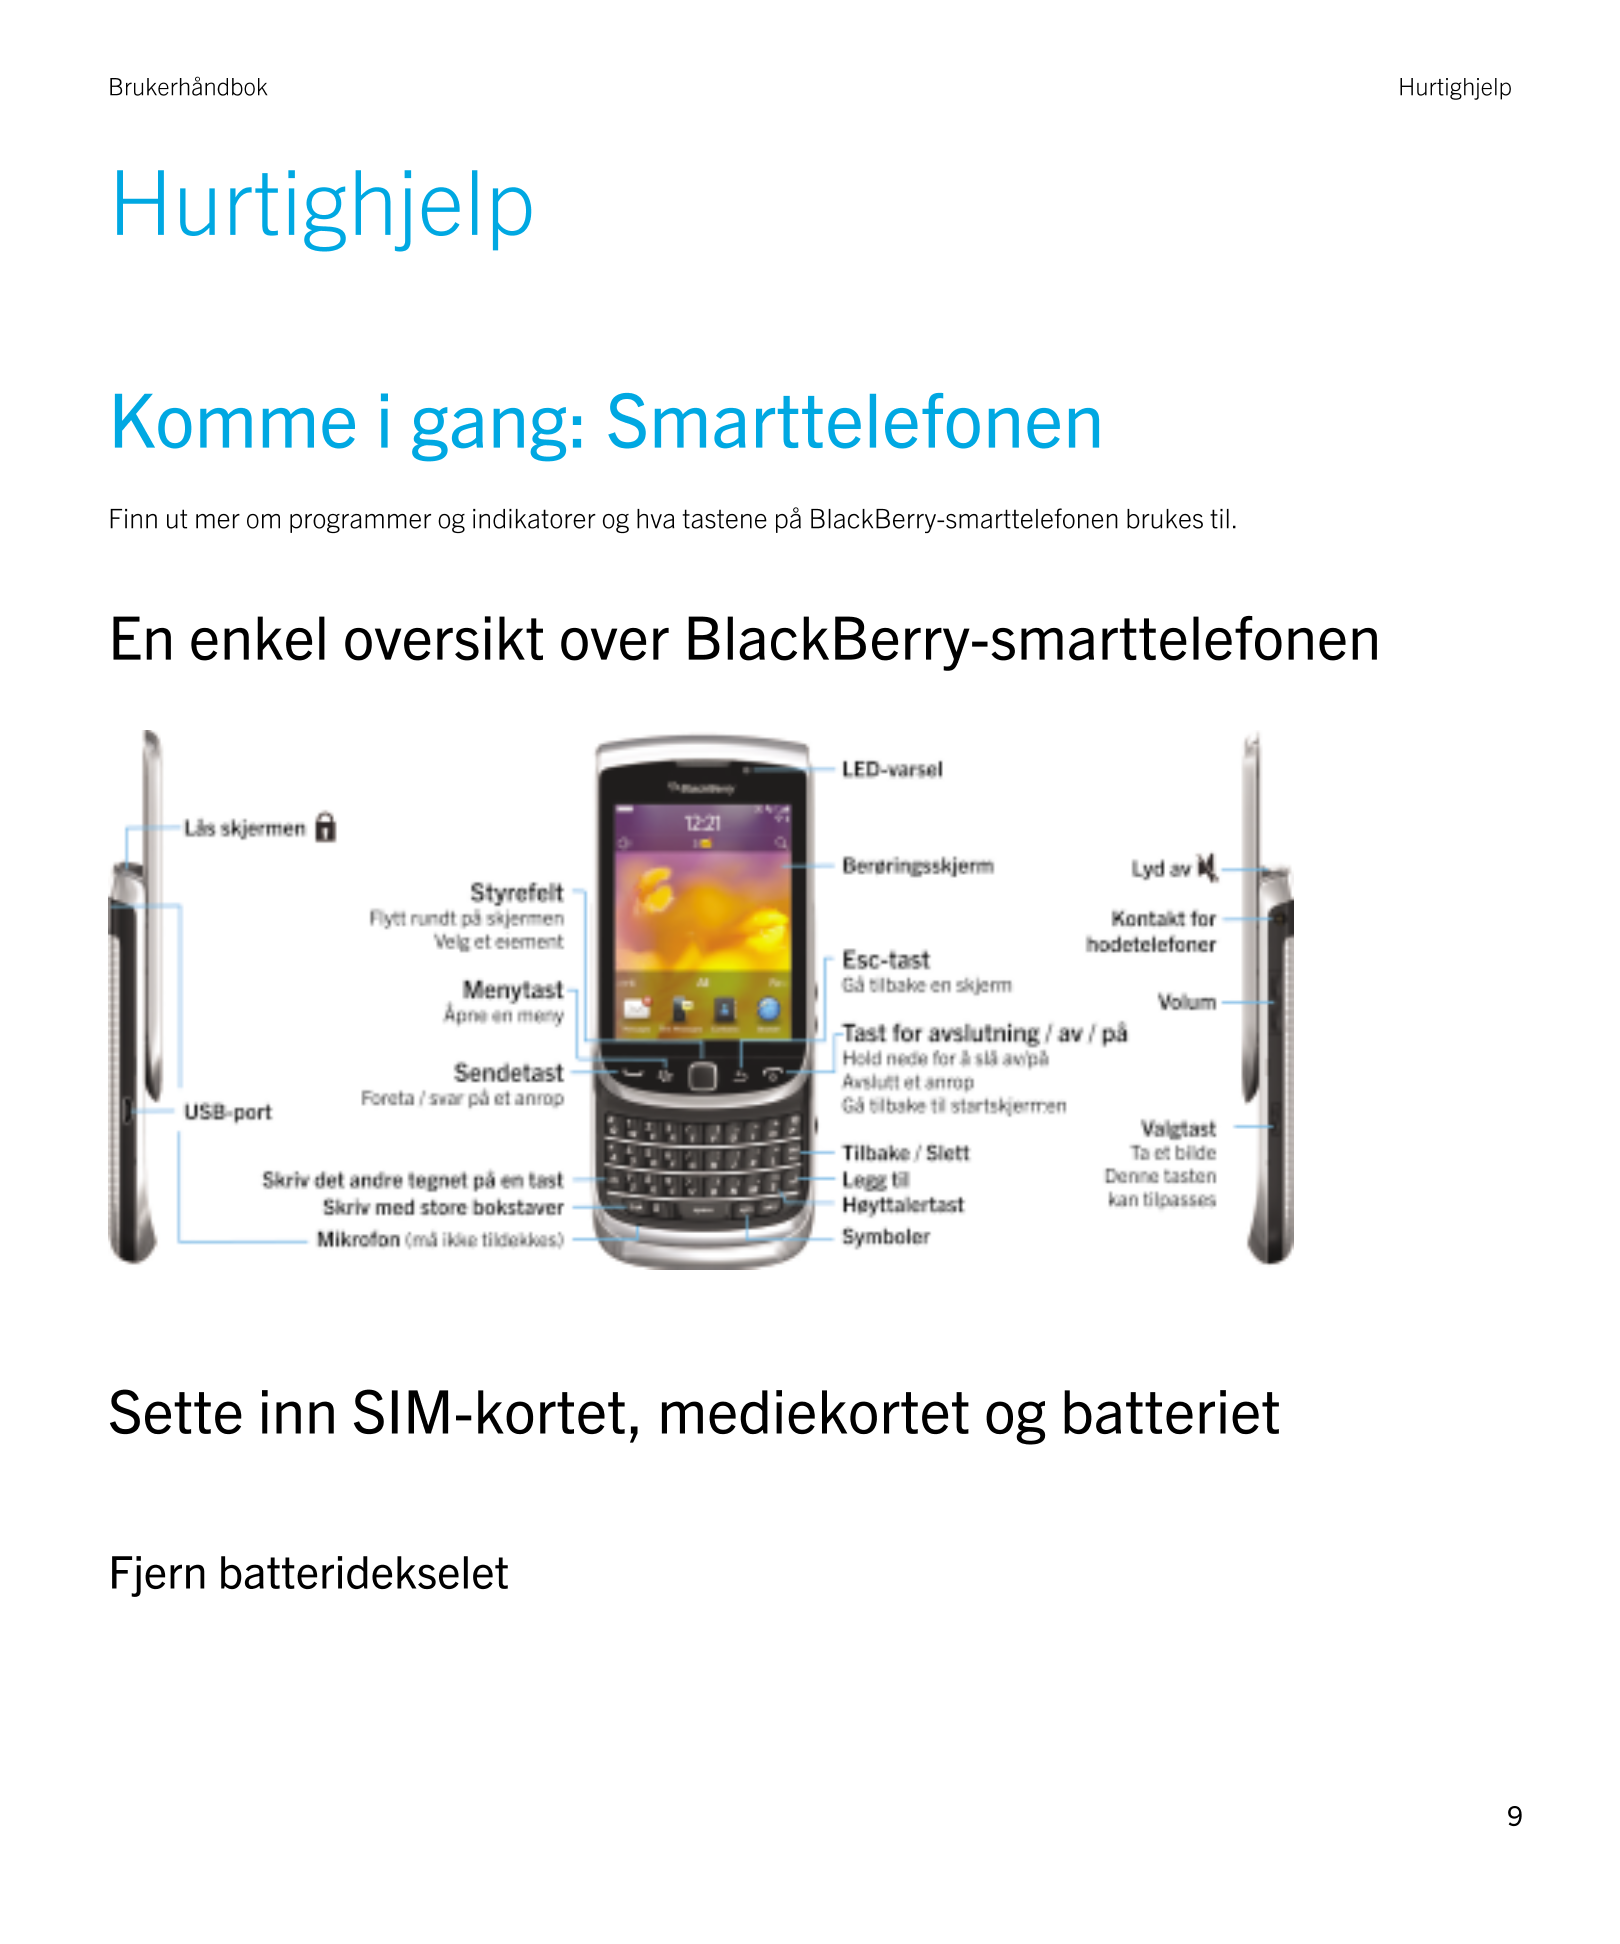 Brukerhåndbok Hurtighjelp
Hurtighjelp
Komme i gang: Smarttelefonen
Finn ut mer om programmer og indikatorer og hva tastene på  B